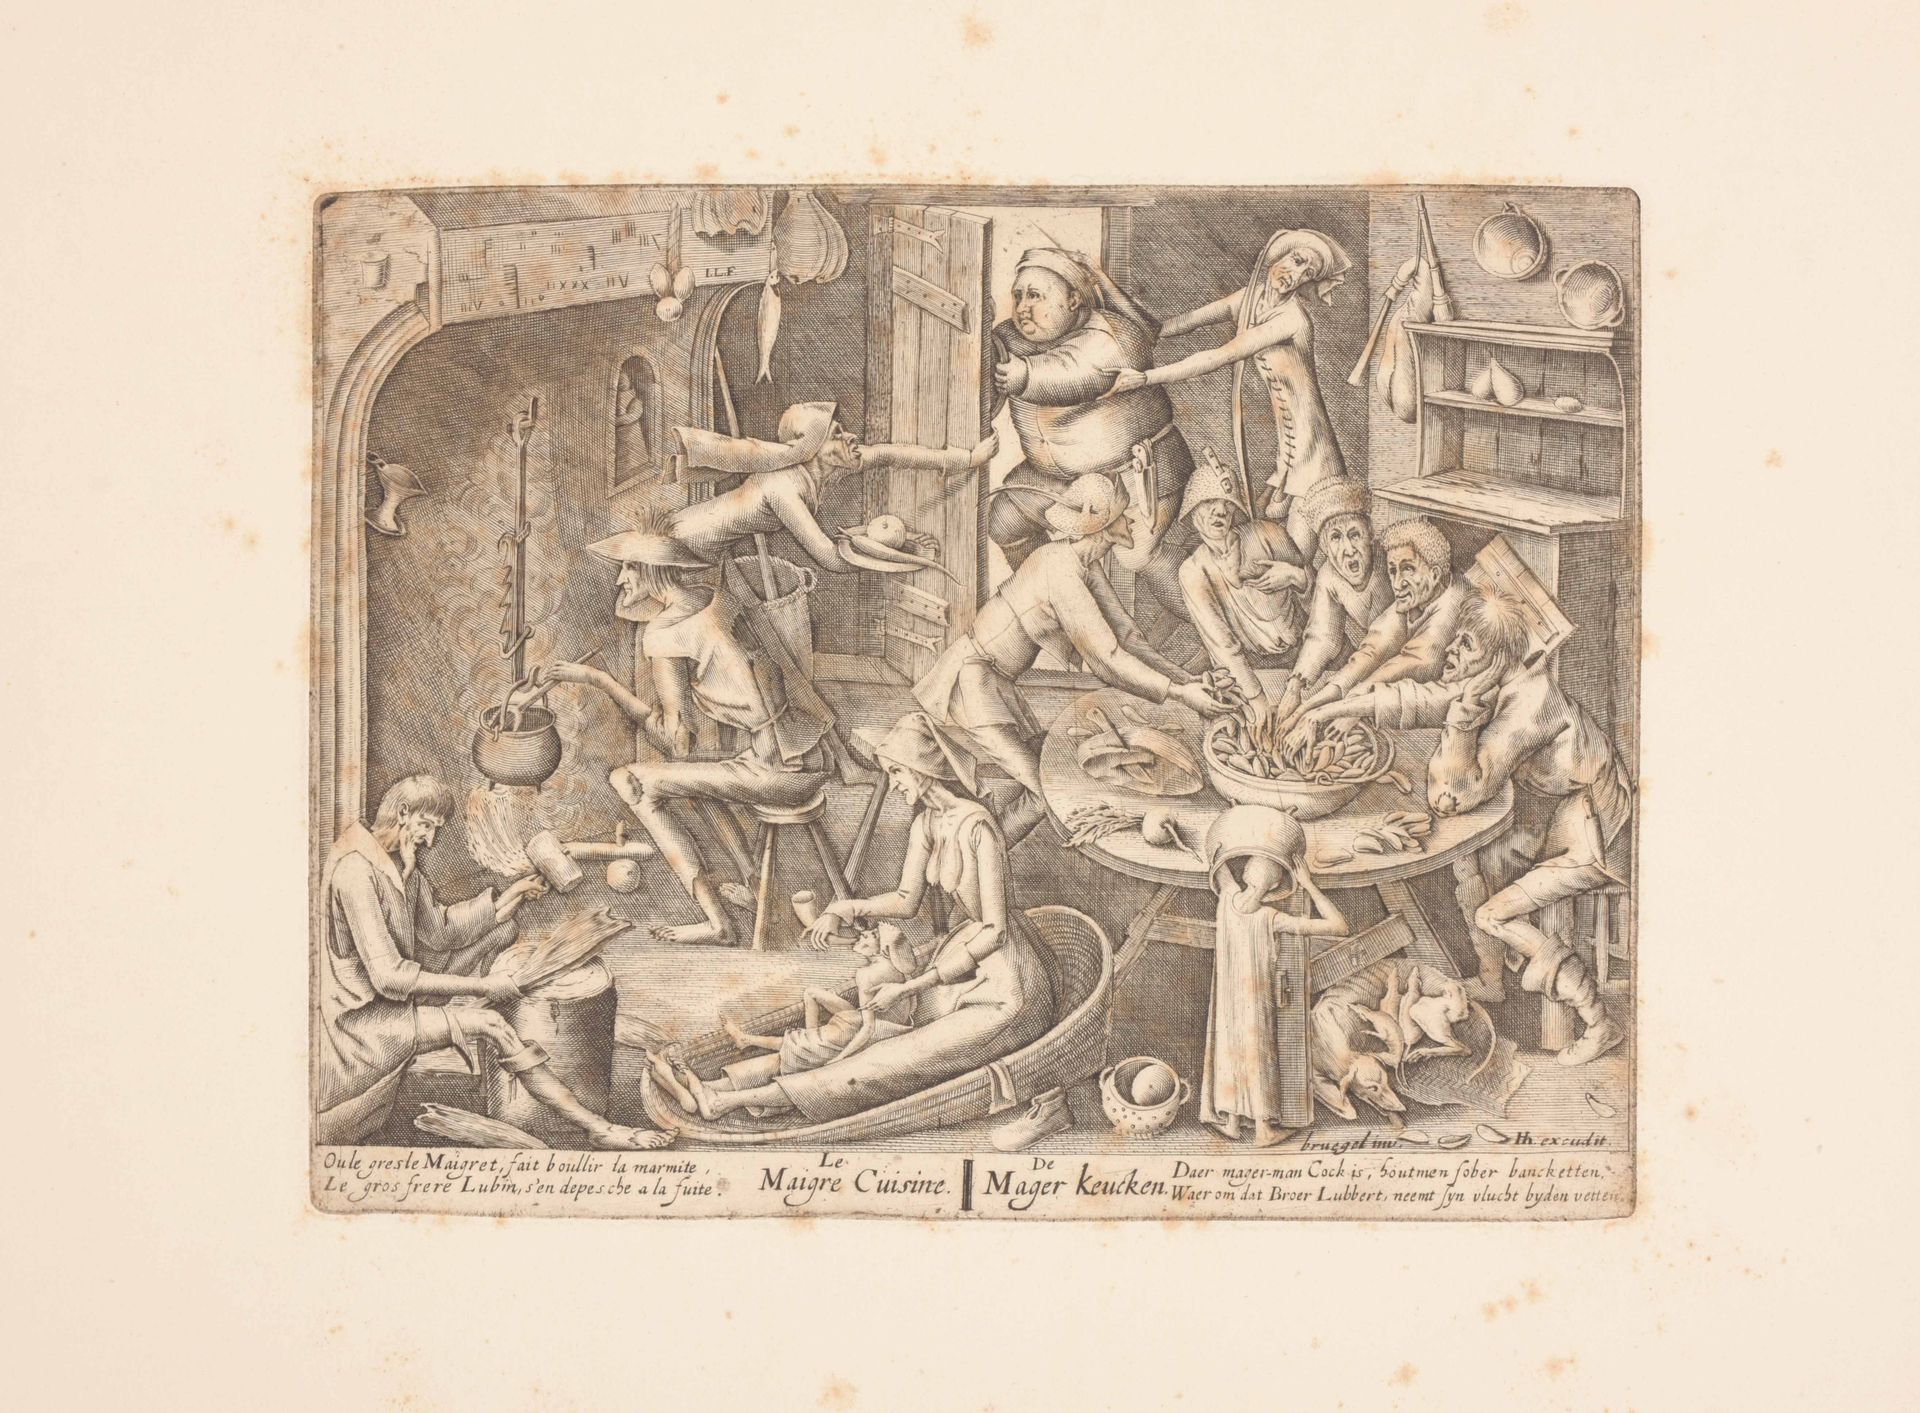 [BRUEGEL, Pieter after (ca. 1525- ca. 1569] La cocina pobre / La cocina rica

Im&hellip;